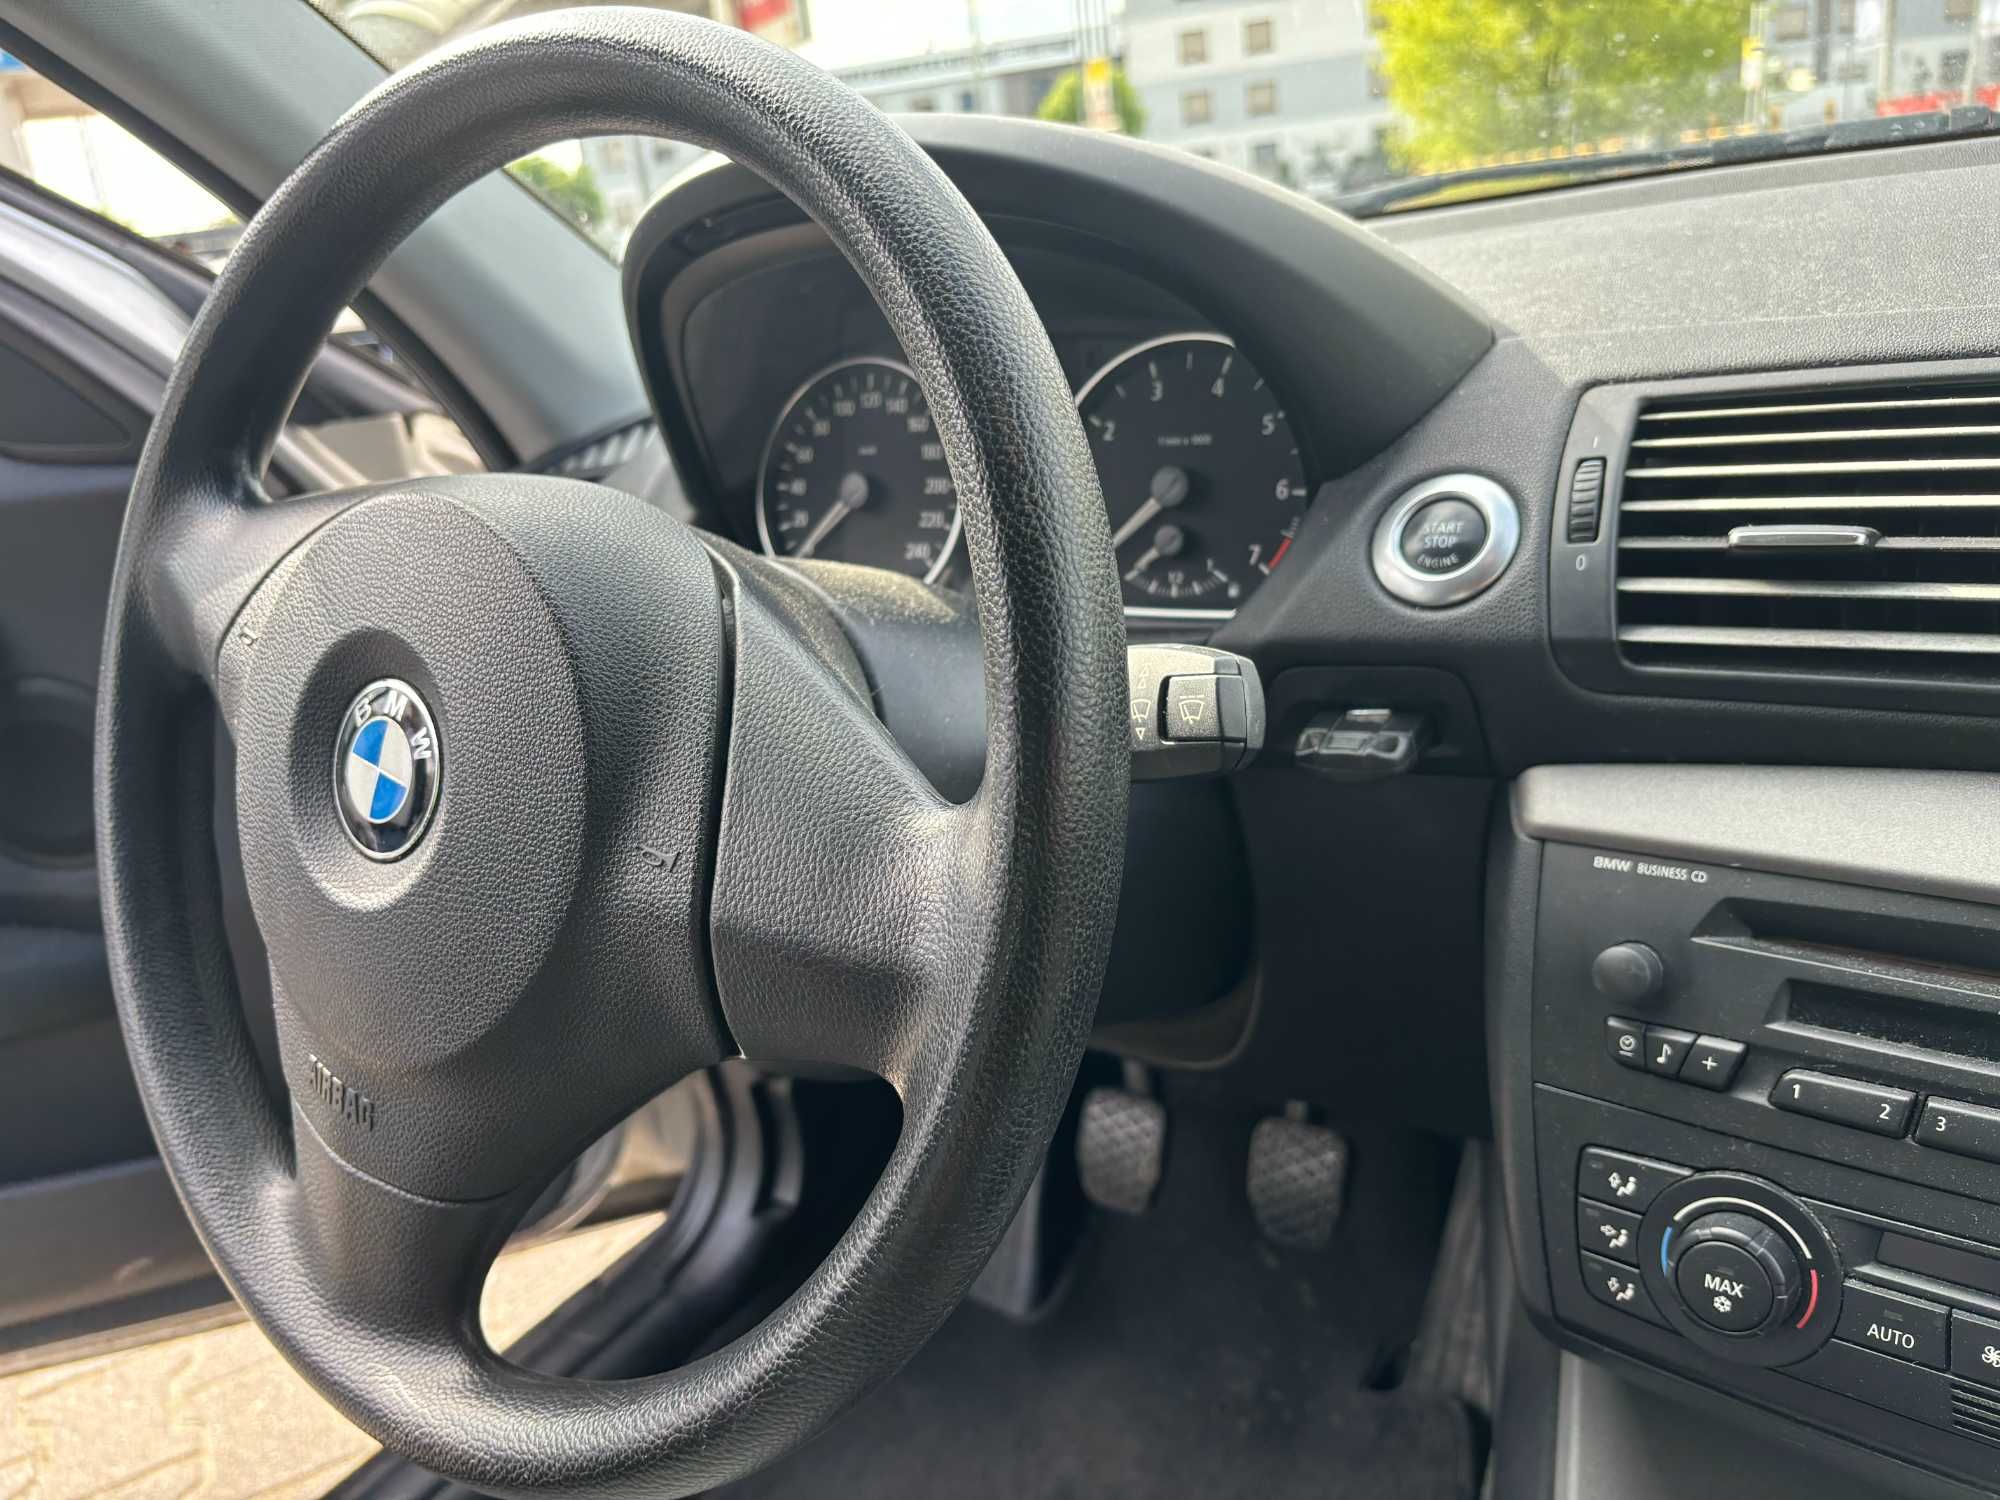 BMW 116i 2005 r.